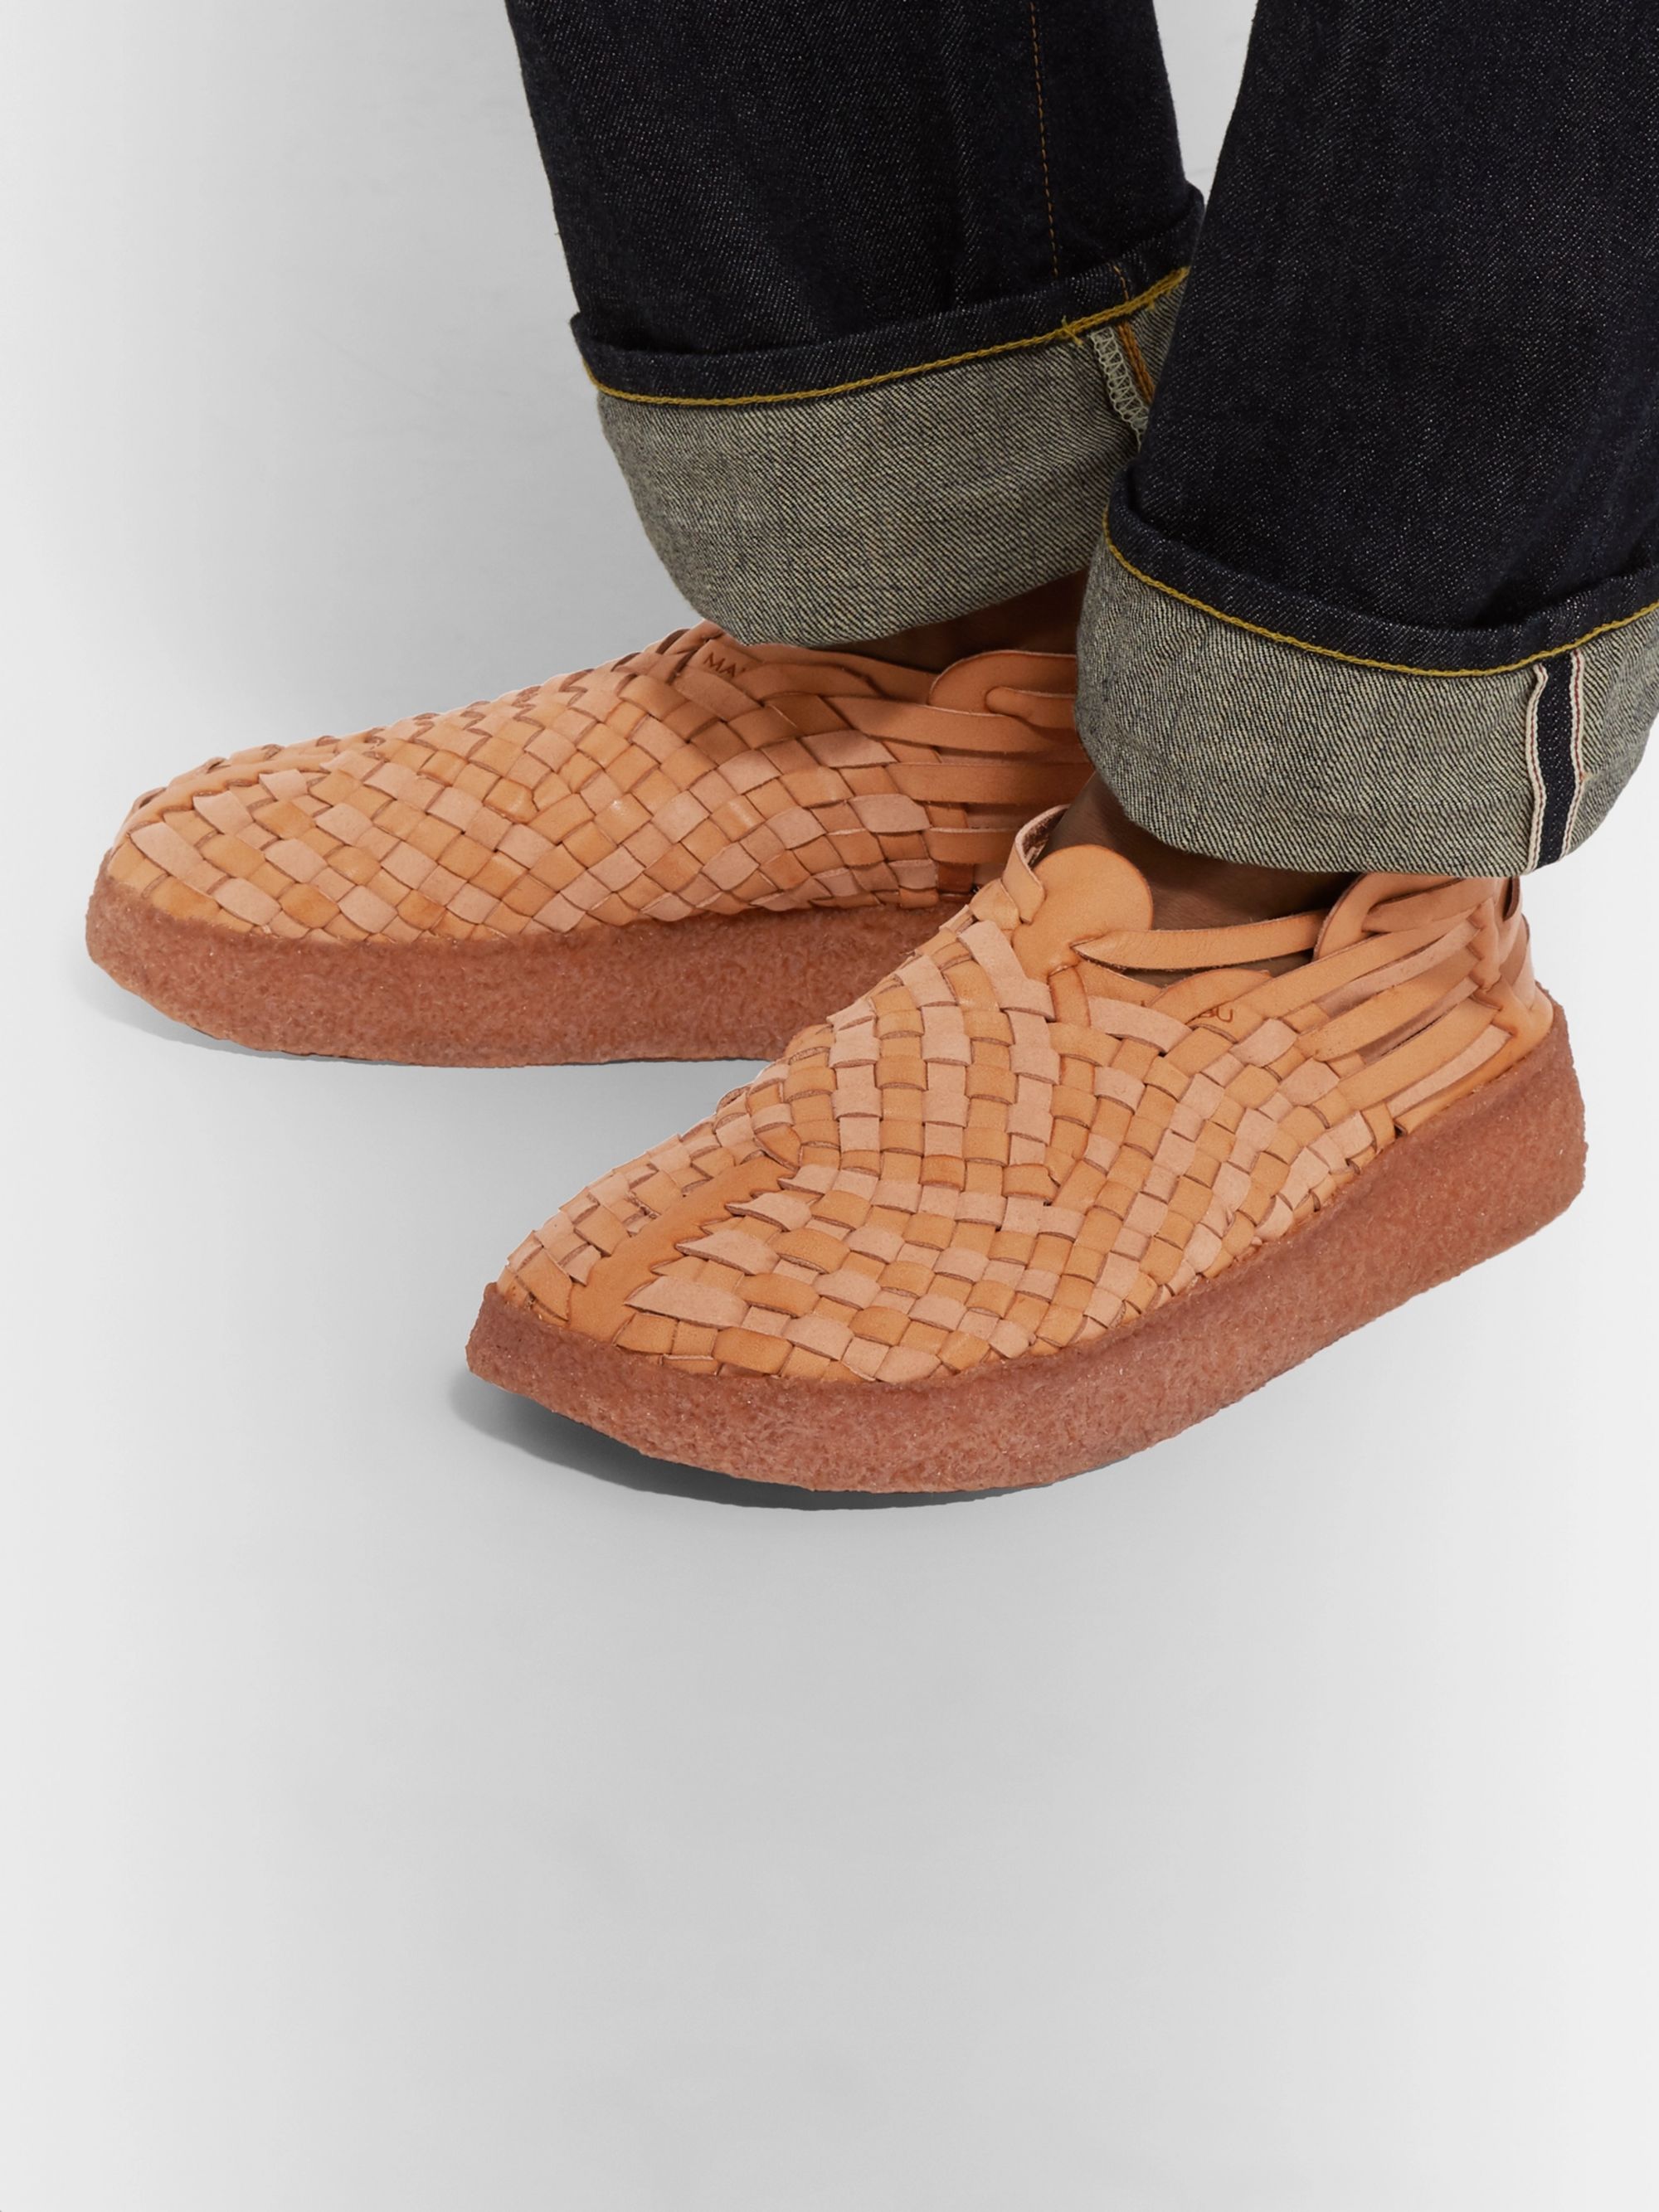 Men's Sandals | Designer Shoes | MR PORTER